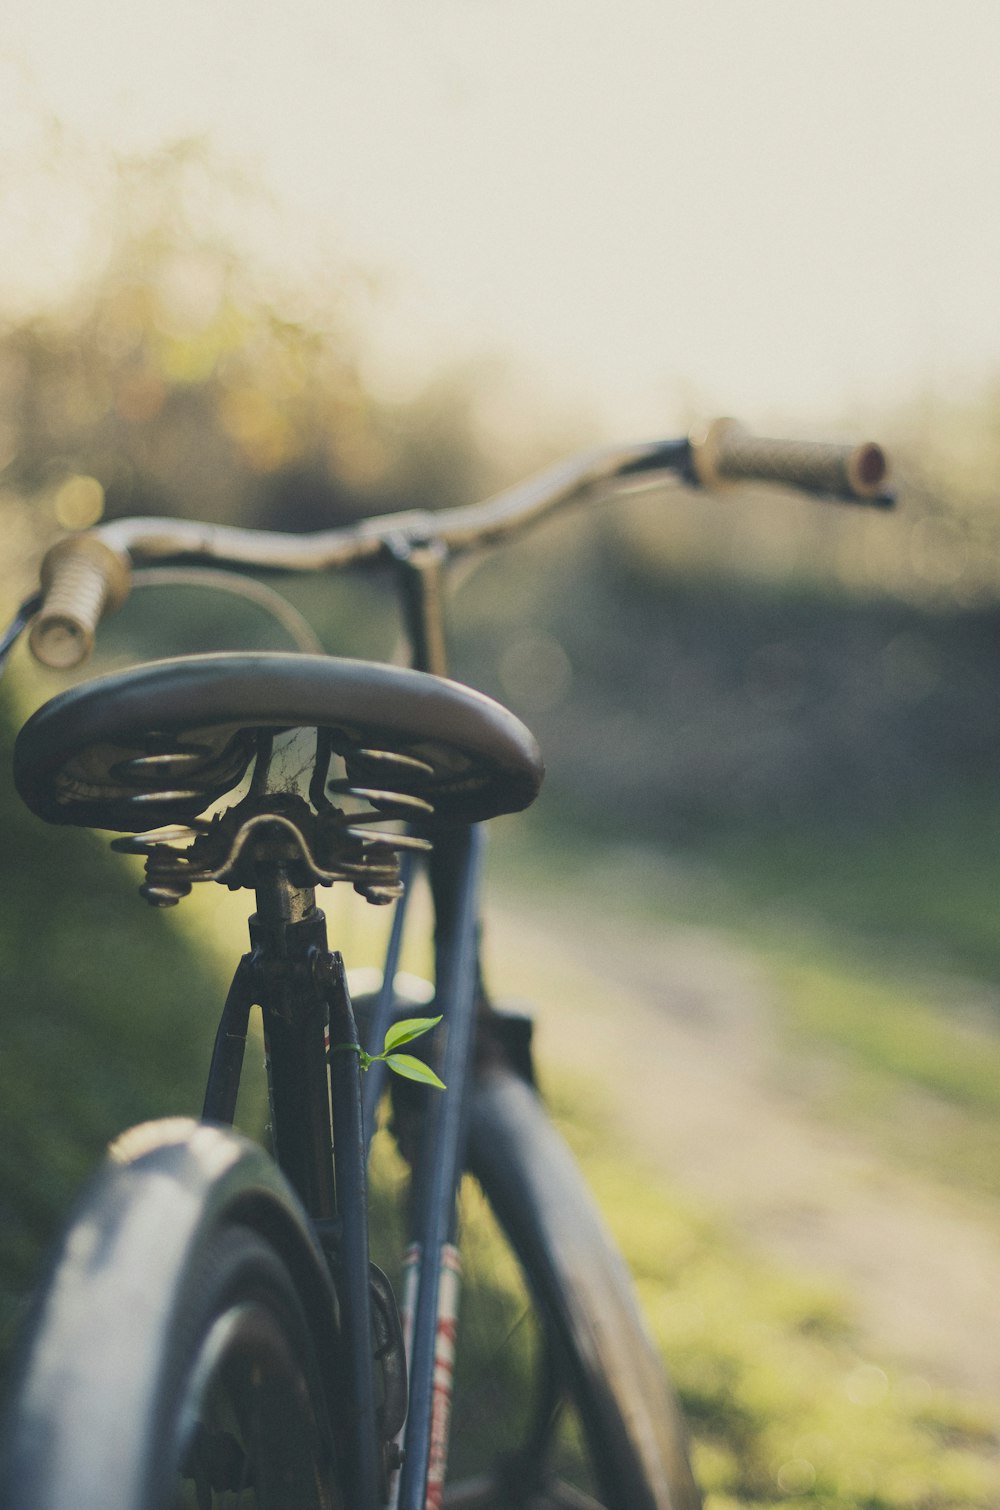 Photographie sélective de la bicyclette